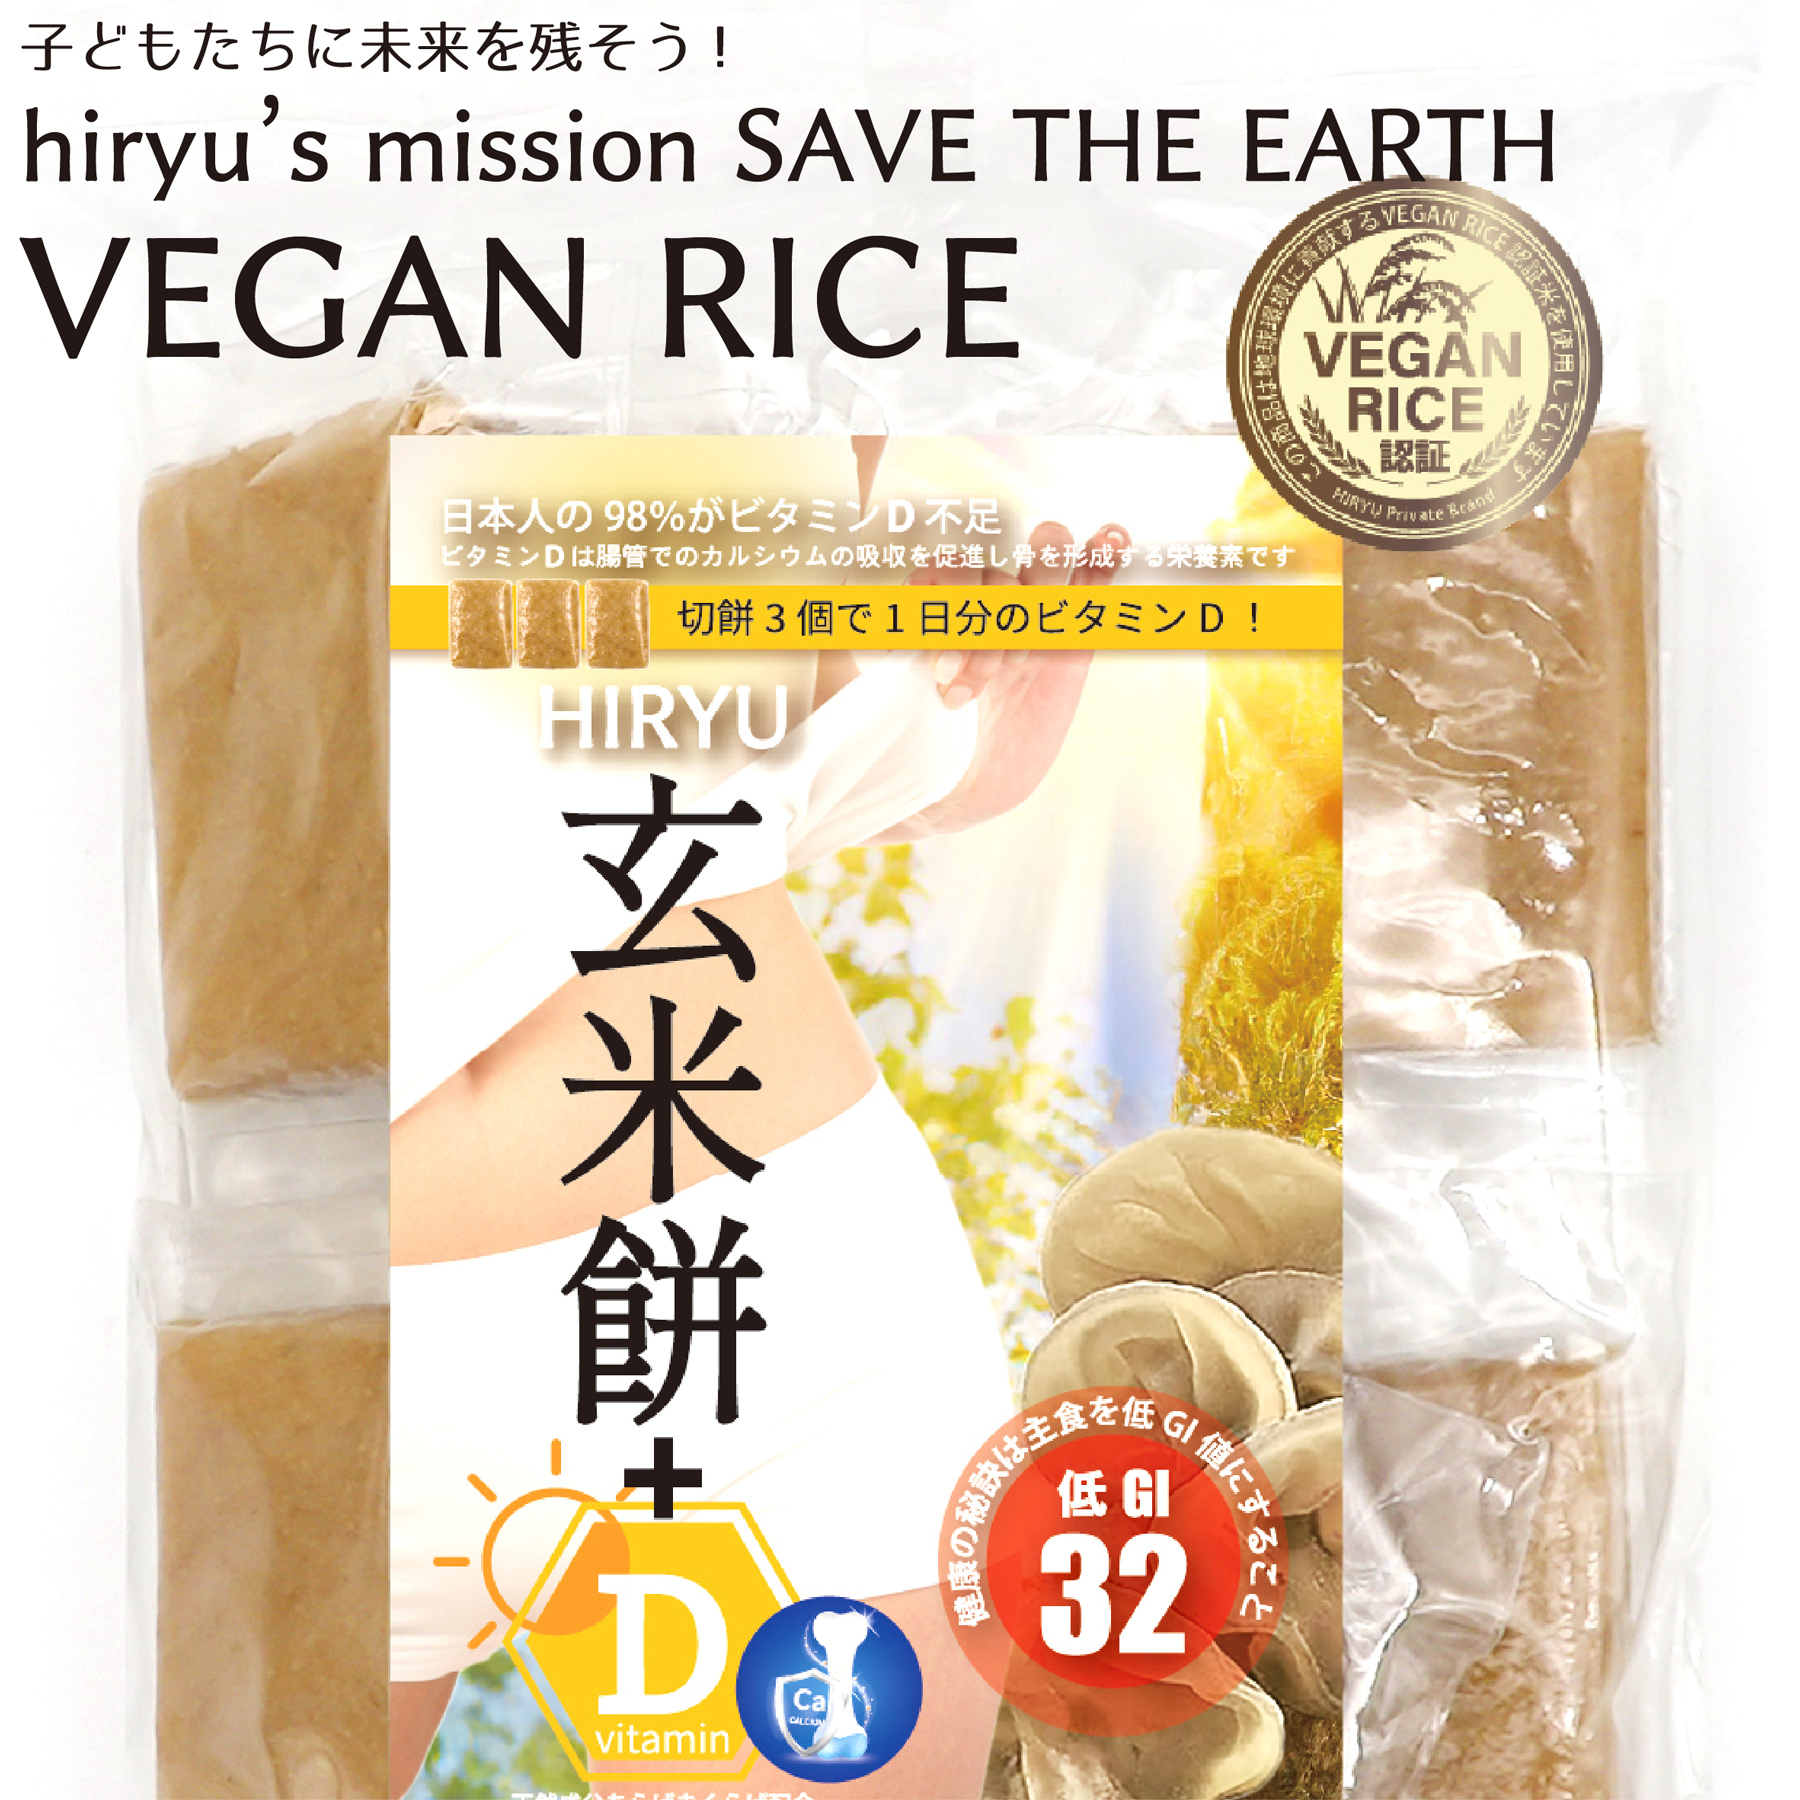 玄米餅+D 10枚入 農薬・肥料不使用  GI値32  VEGAN RICE